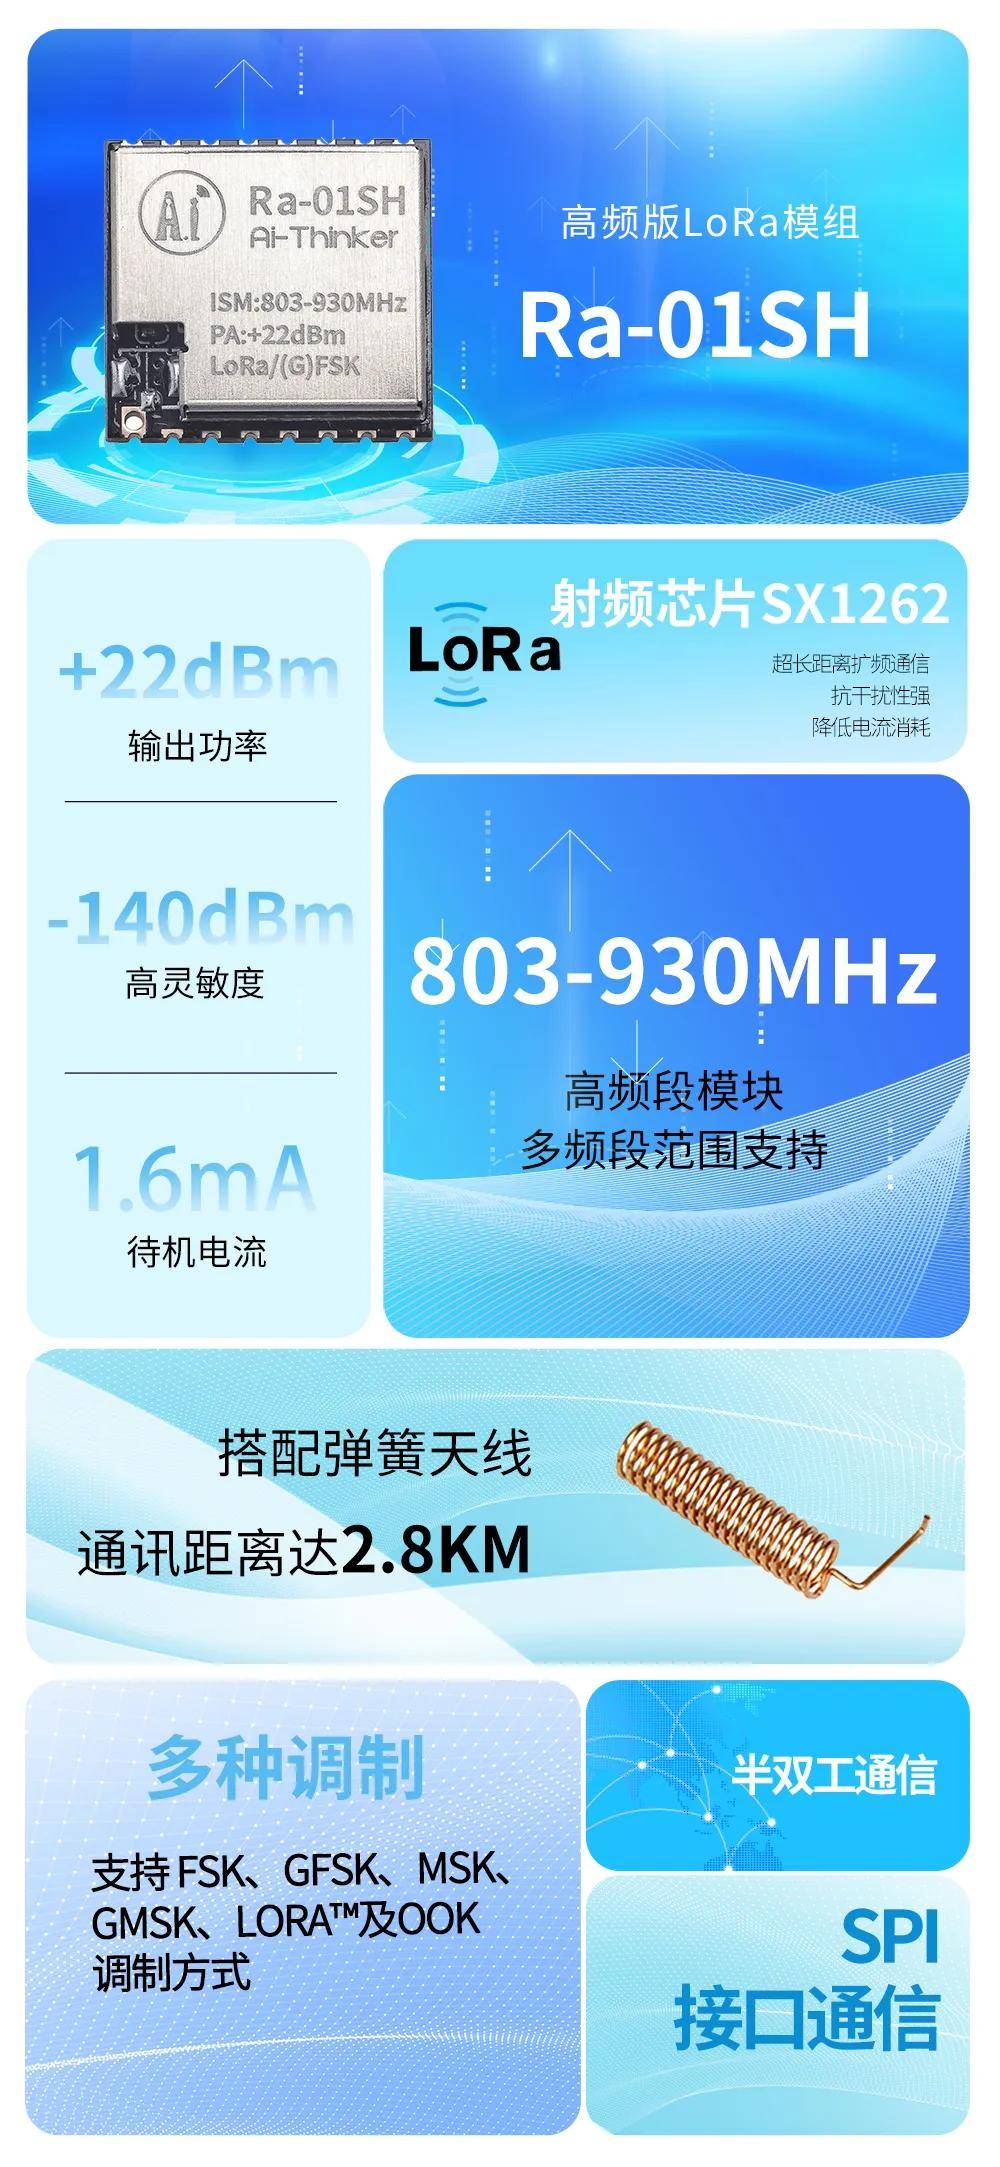 干电池供电可用12.7个月的高频段LoRa模组Ra-01SH